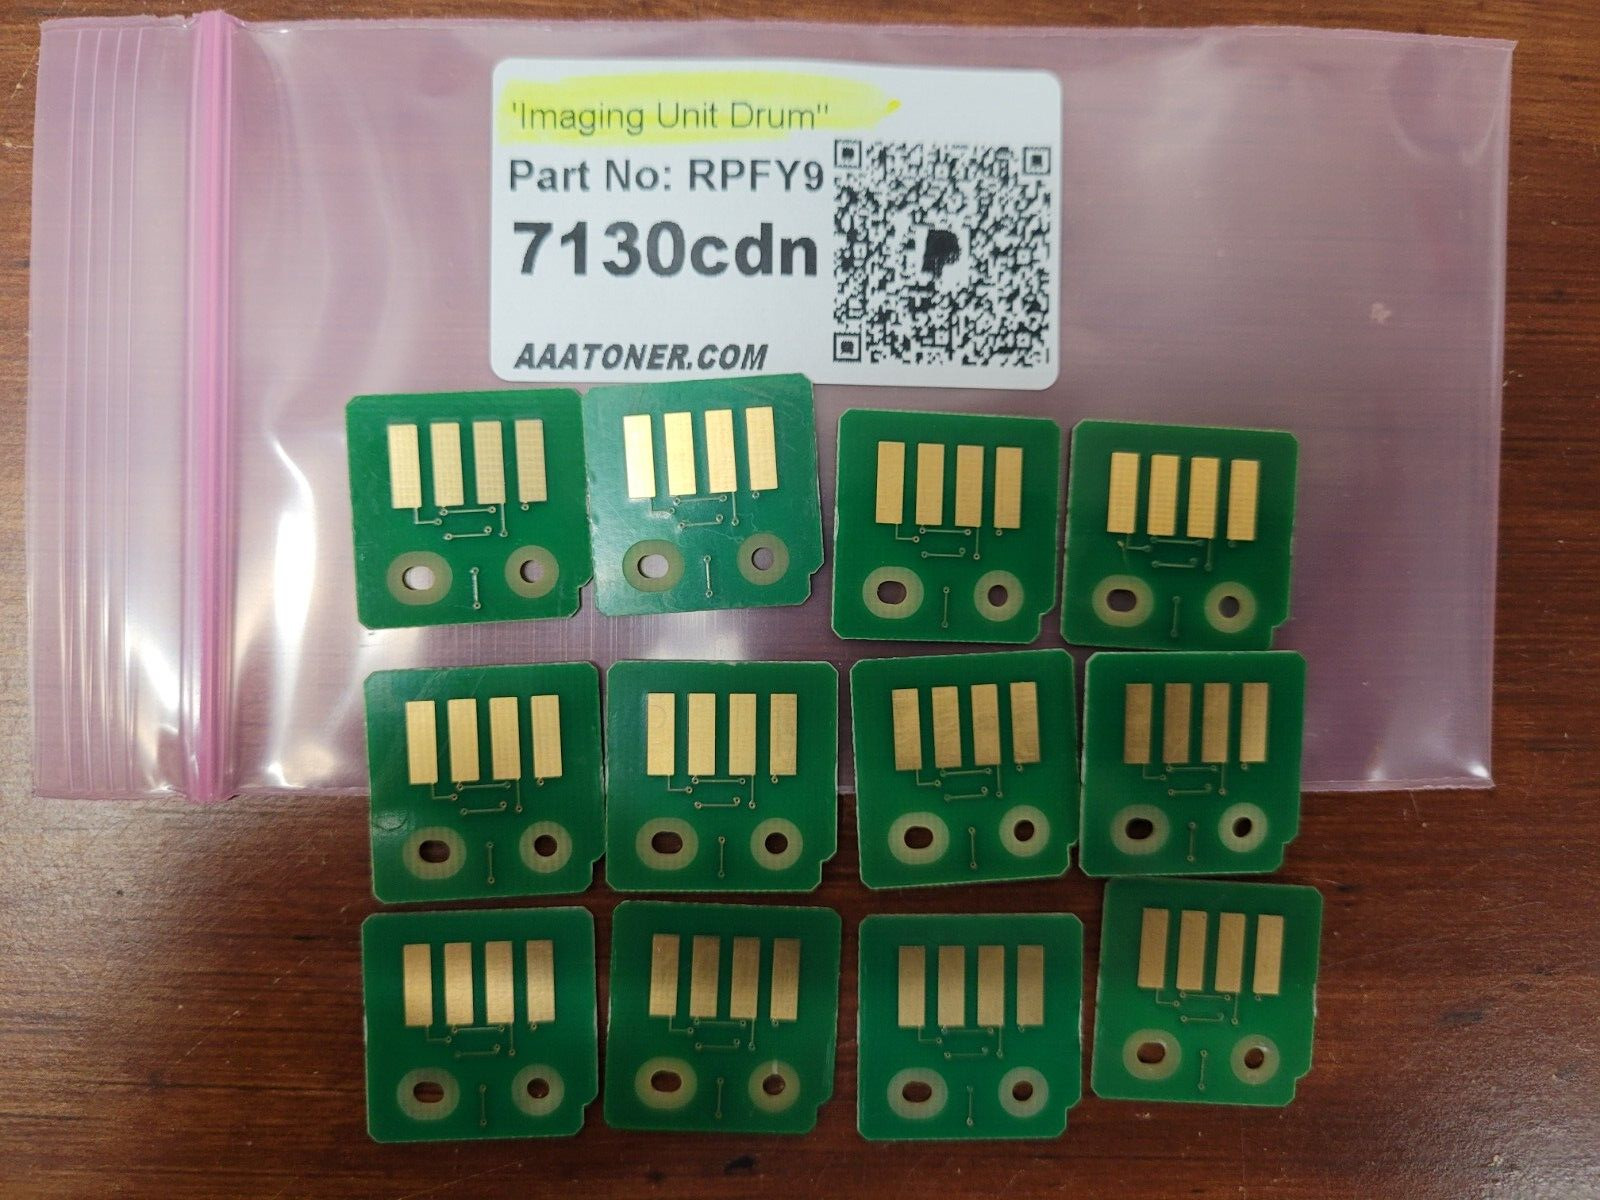 12 x RPFY9 DRUM Chip (IMAGING UNIT) for Dell 7130cdn, 7130cdn Color Laser Refill